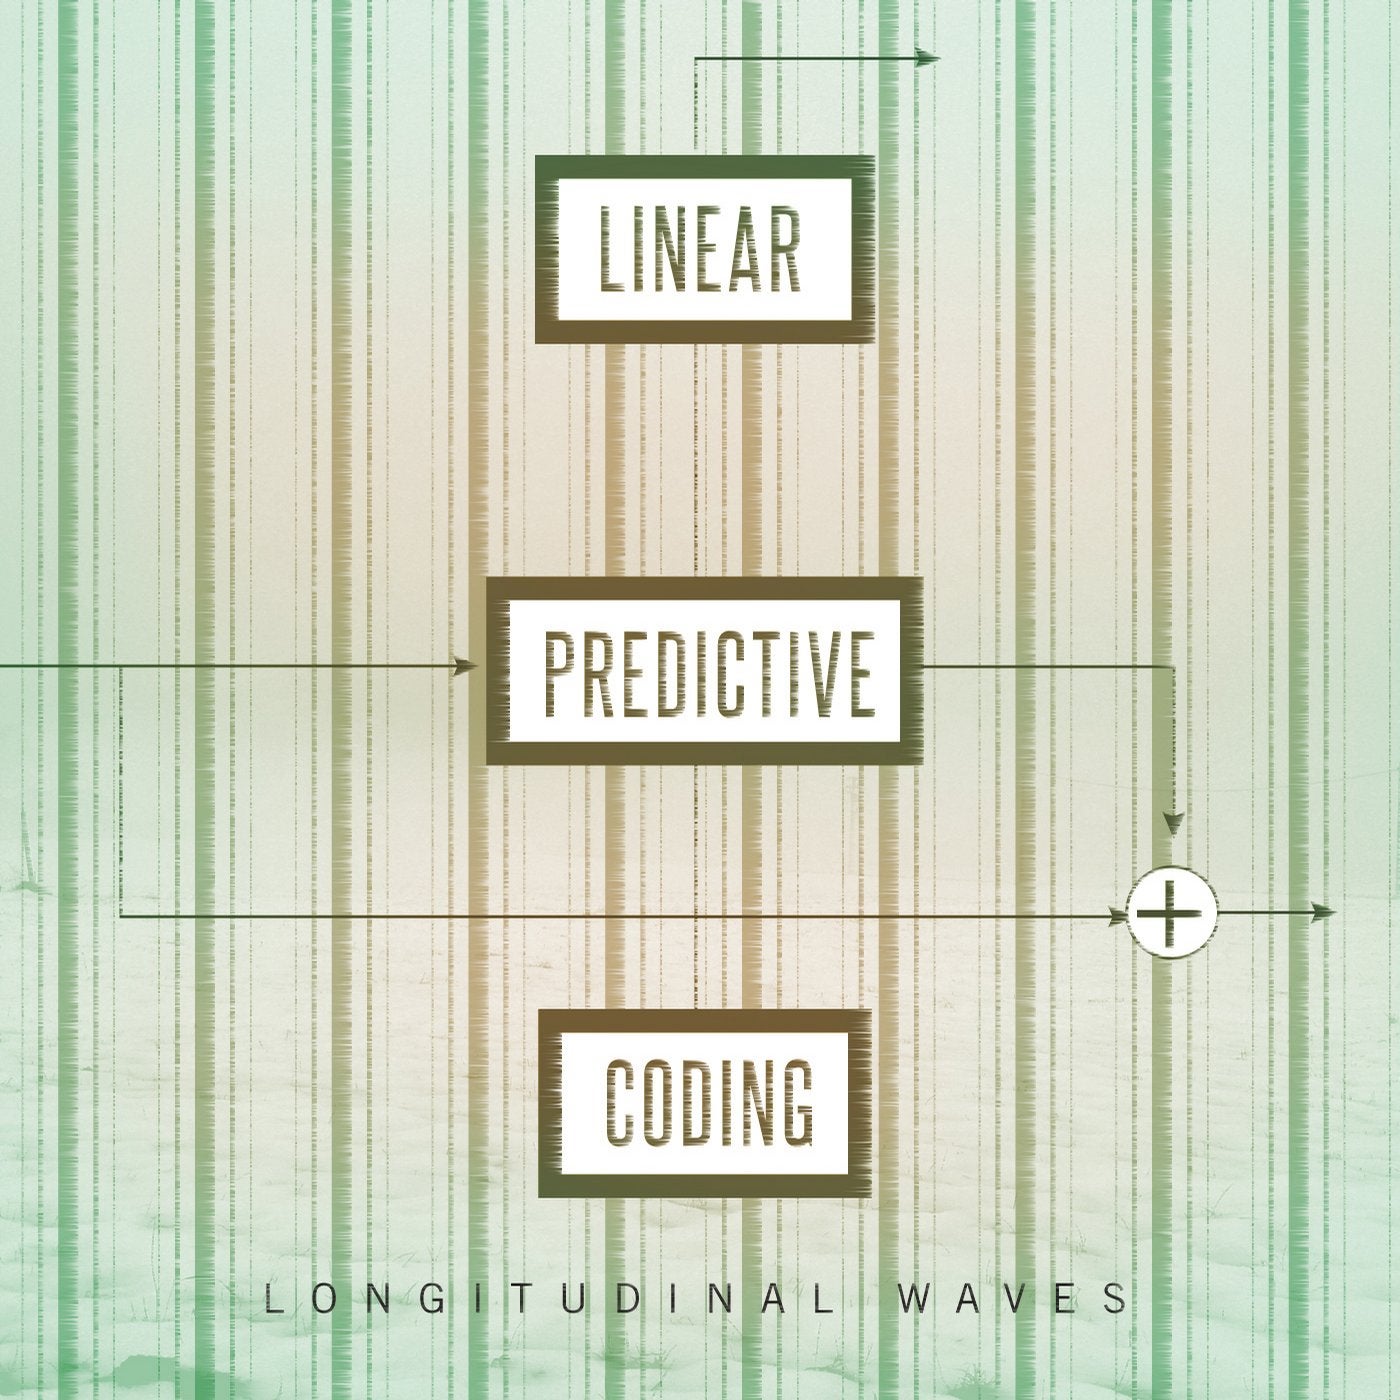 Linear Predictive Coding